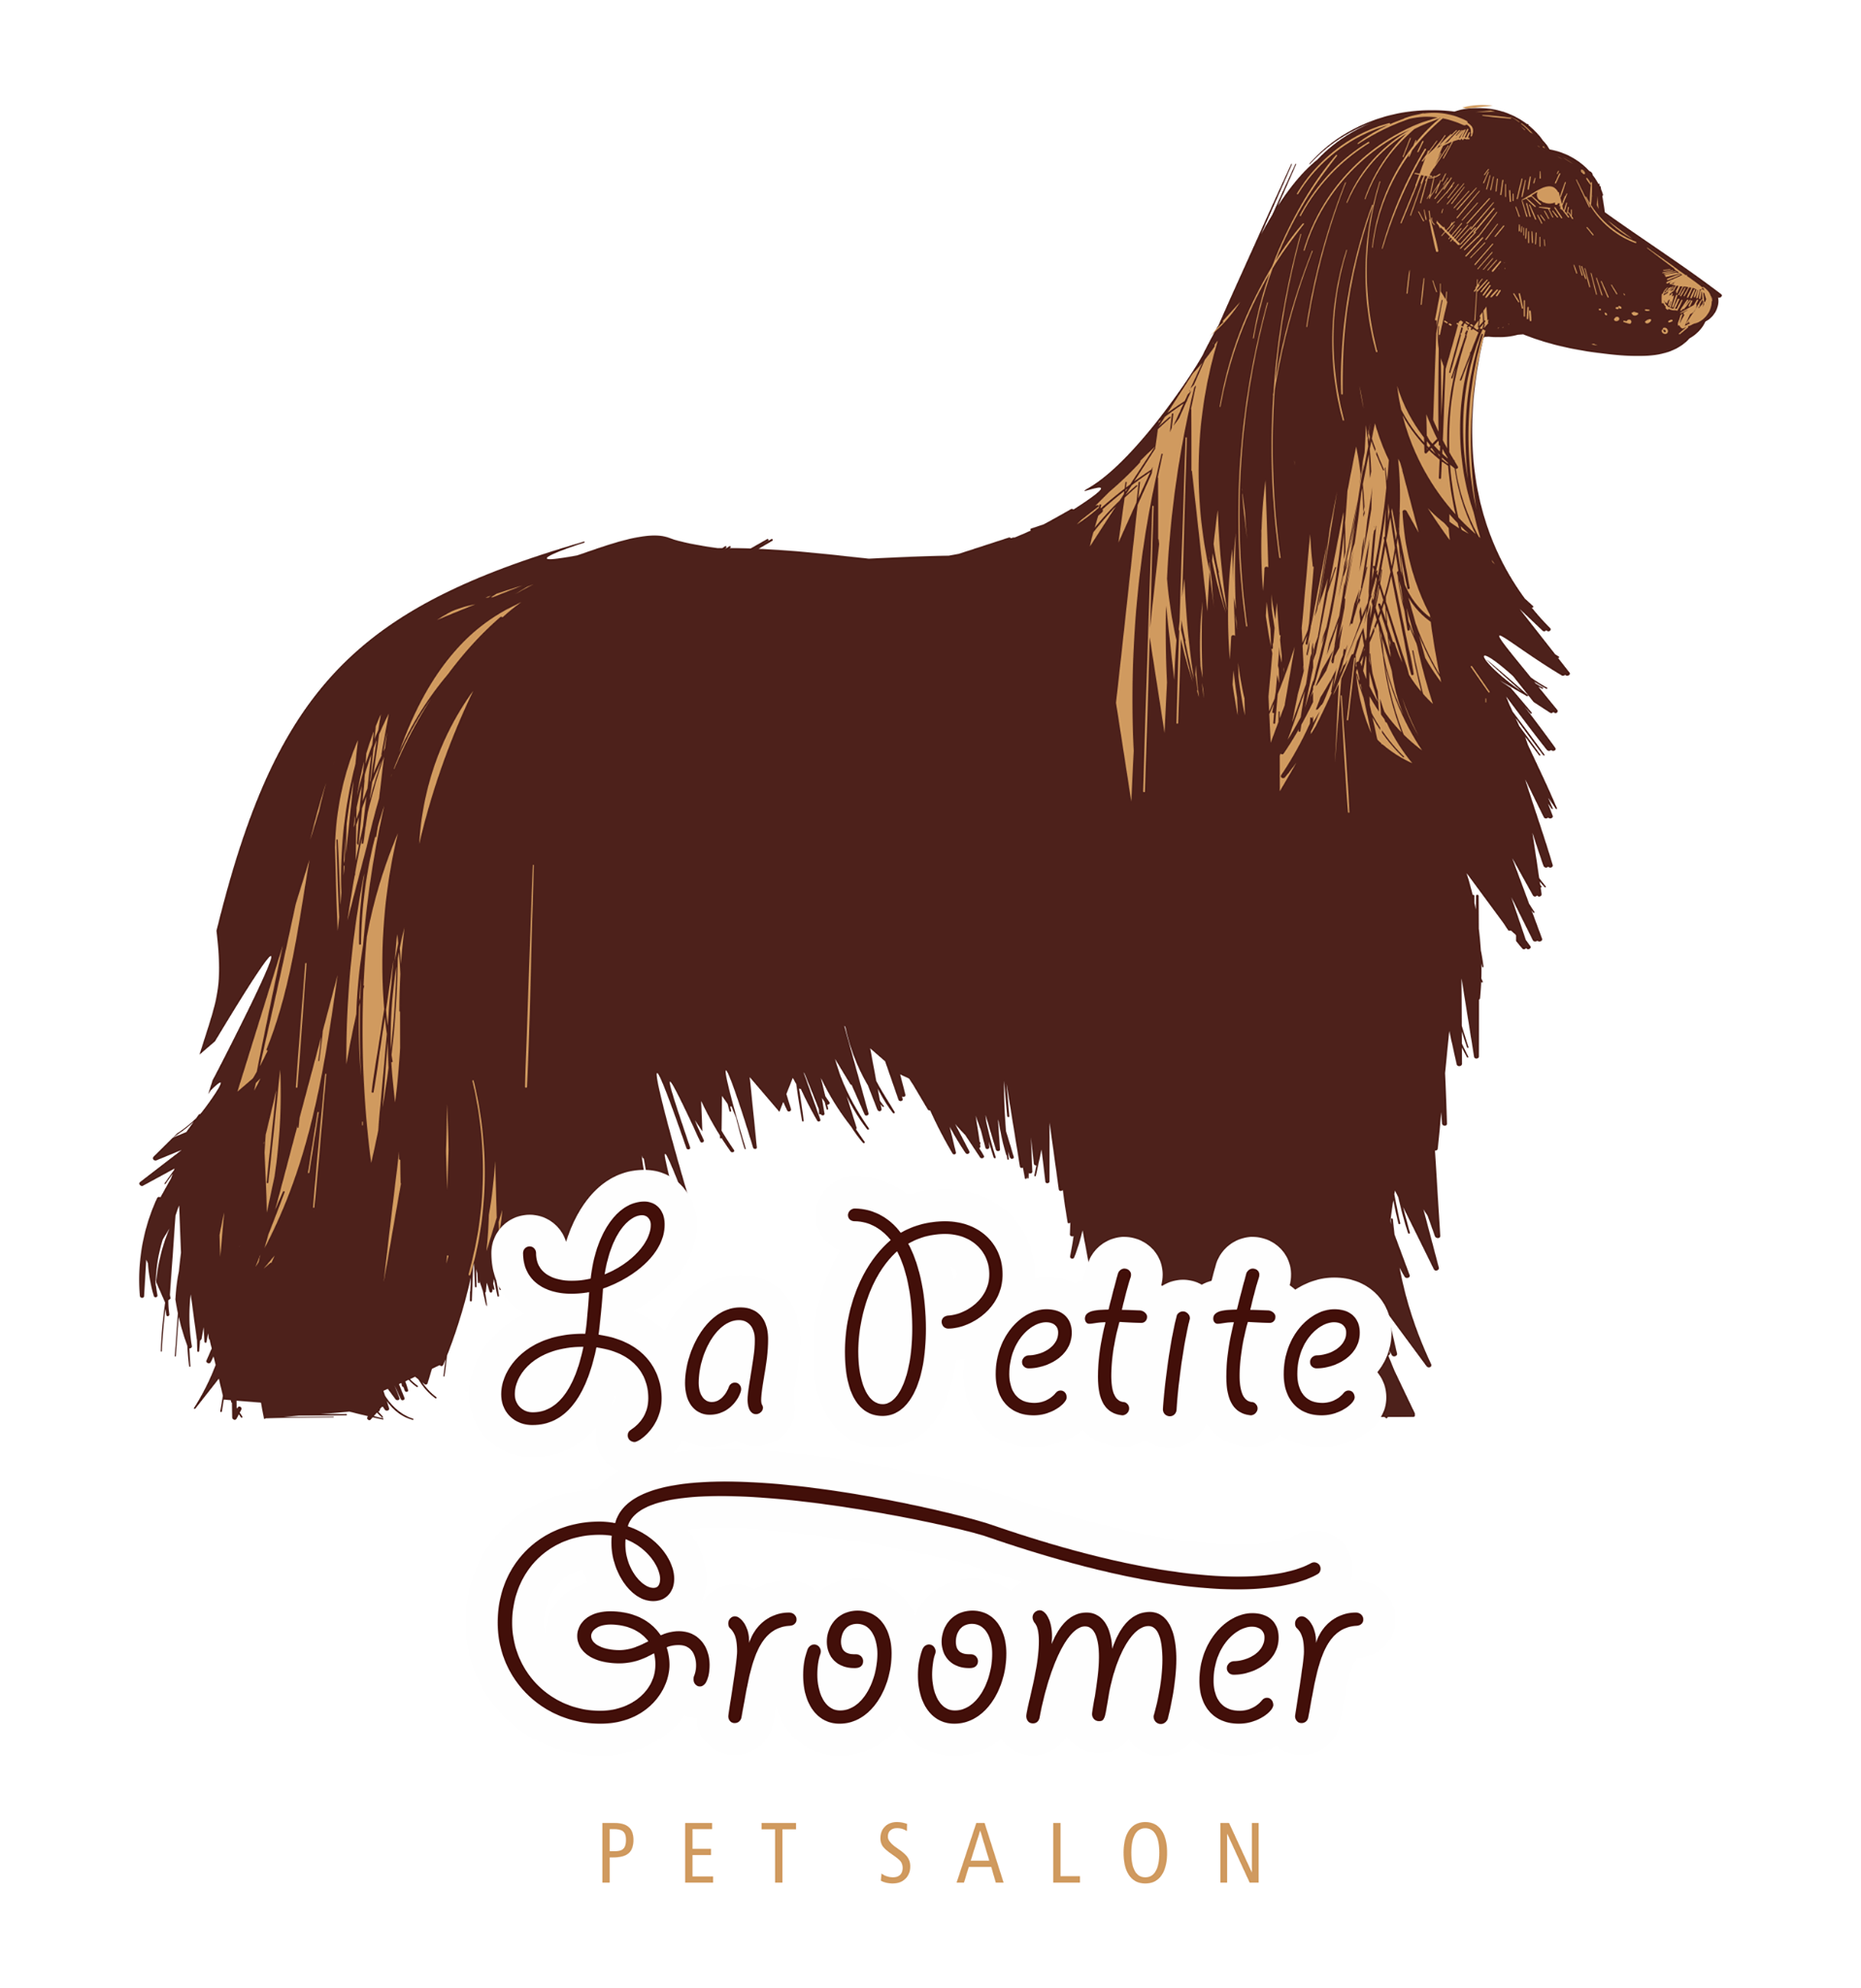 La Petite Groomer Pet Salon